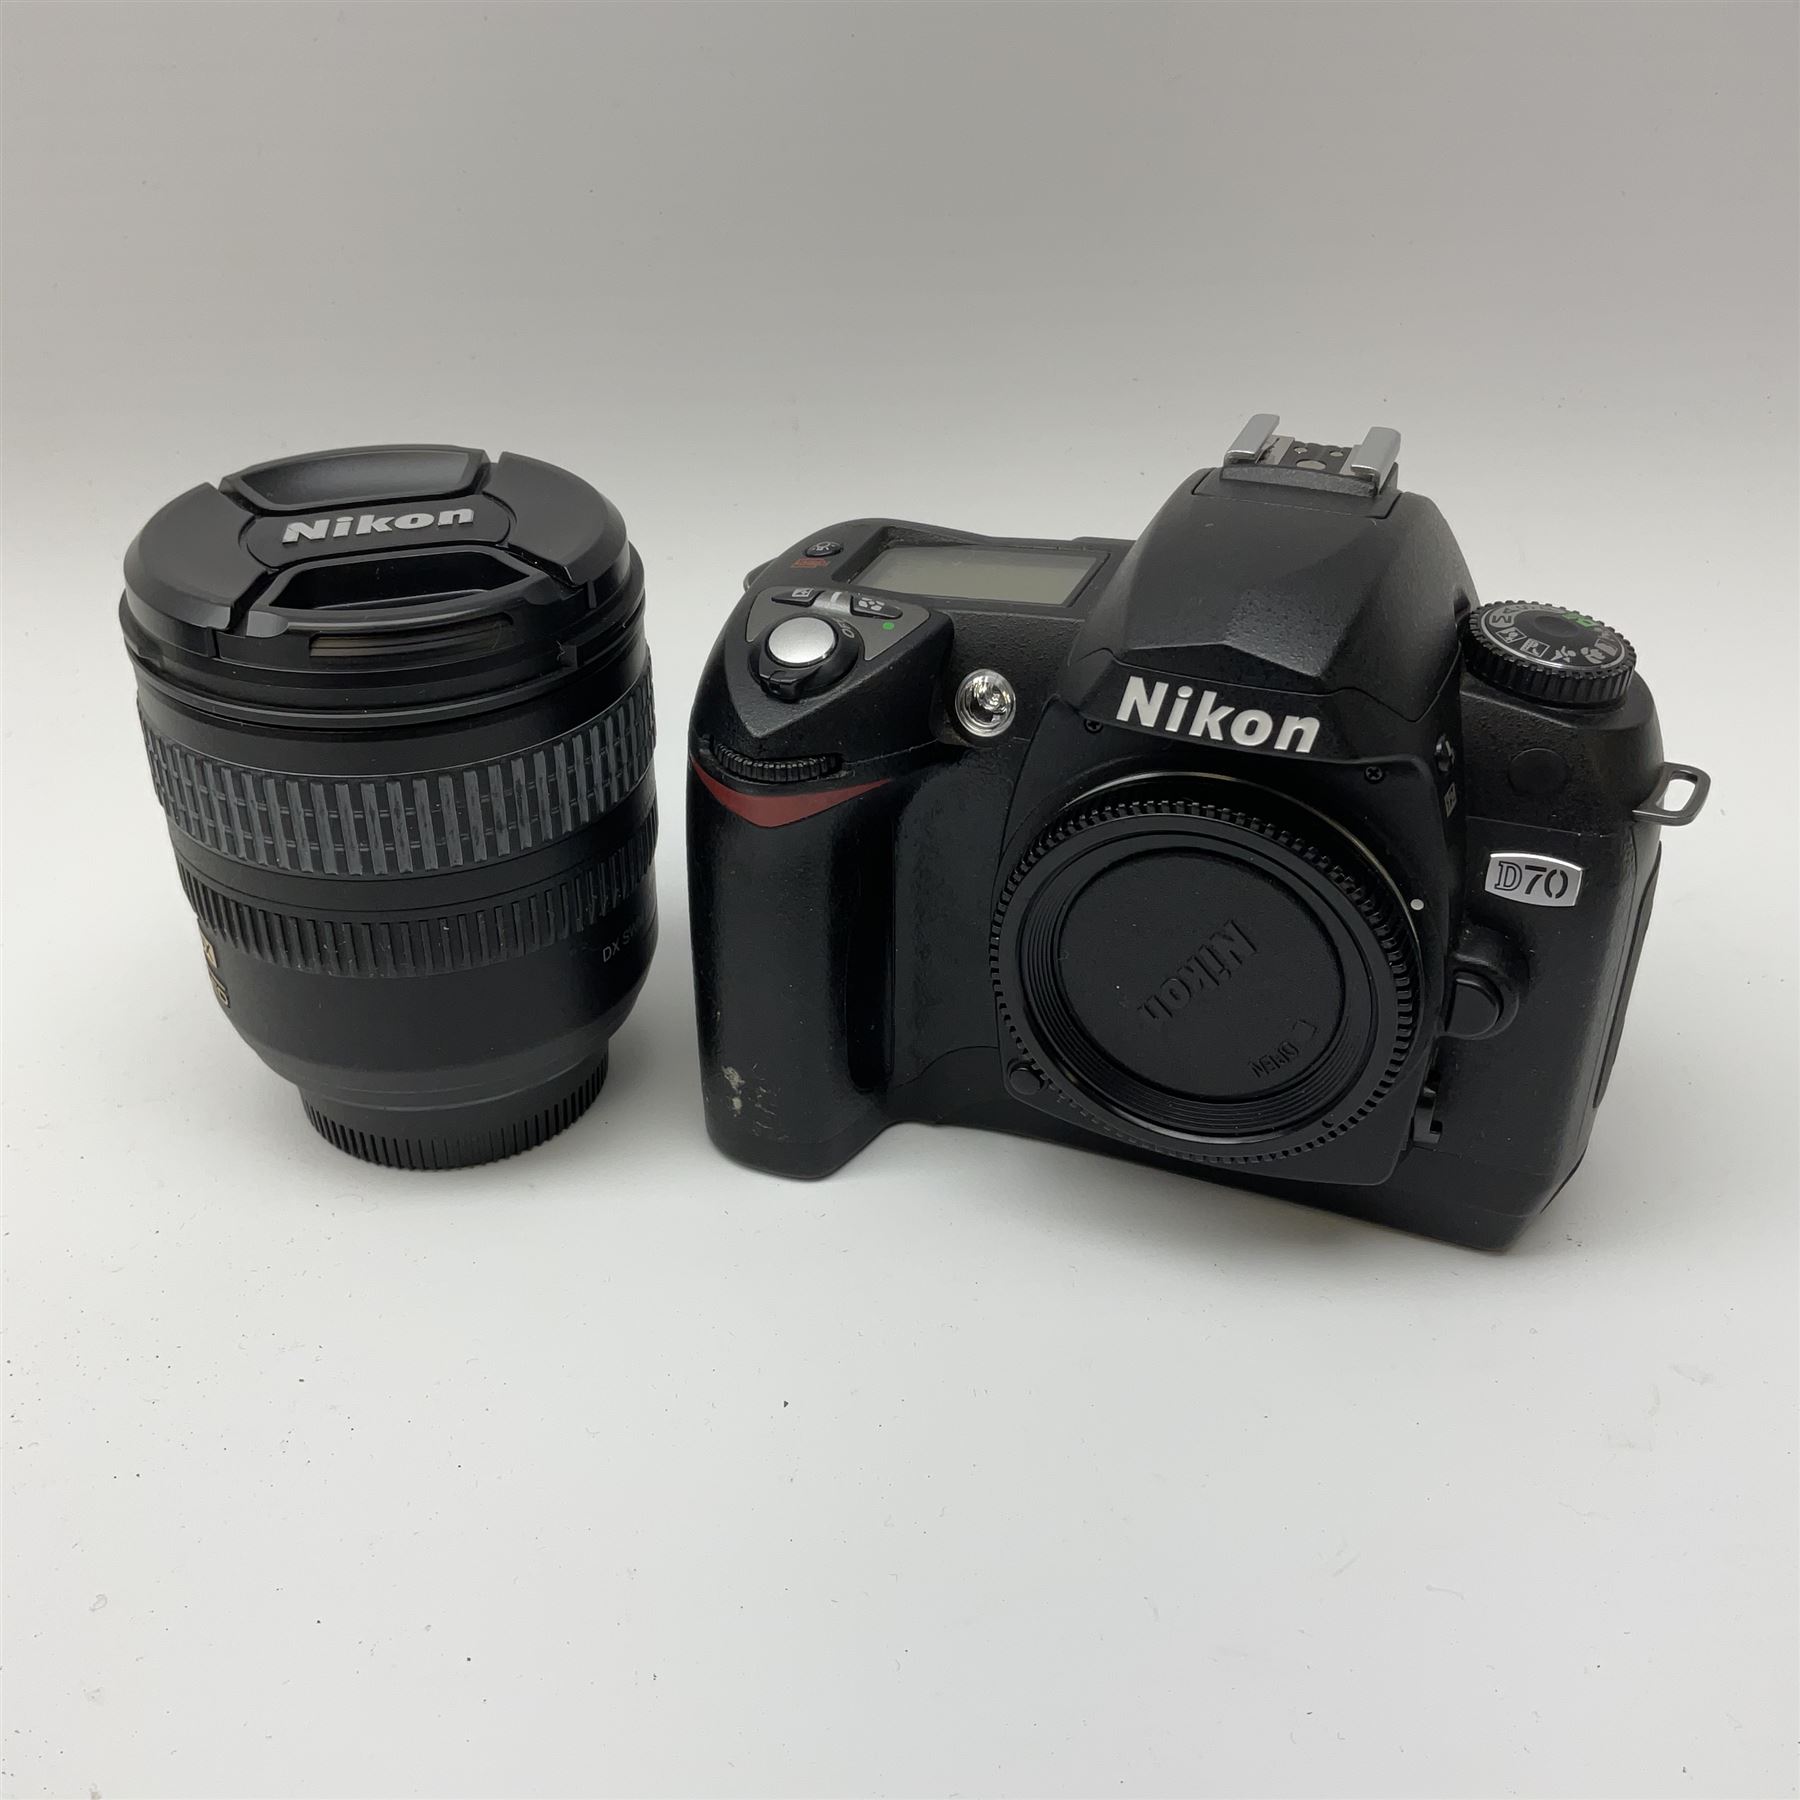 Nikon D70 Kit with AF-S Zoom Nikkor 18-70mm f/3.5~4.5G lens - Image 3 of 8